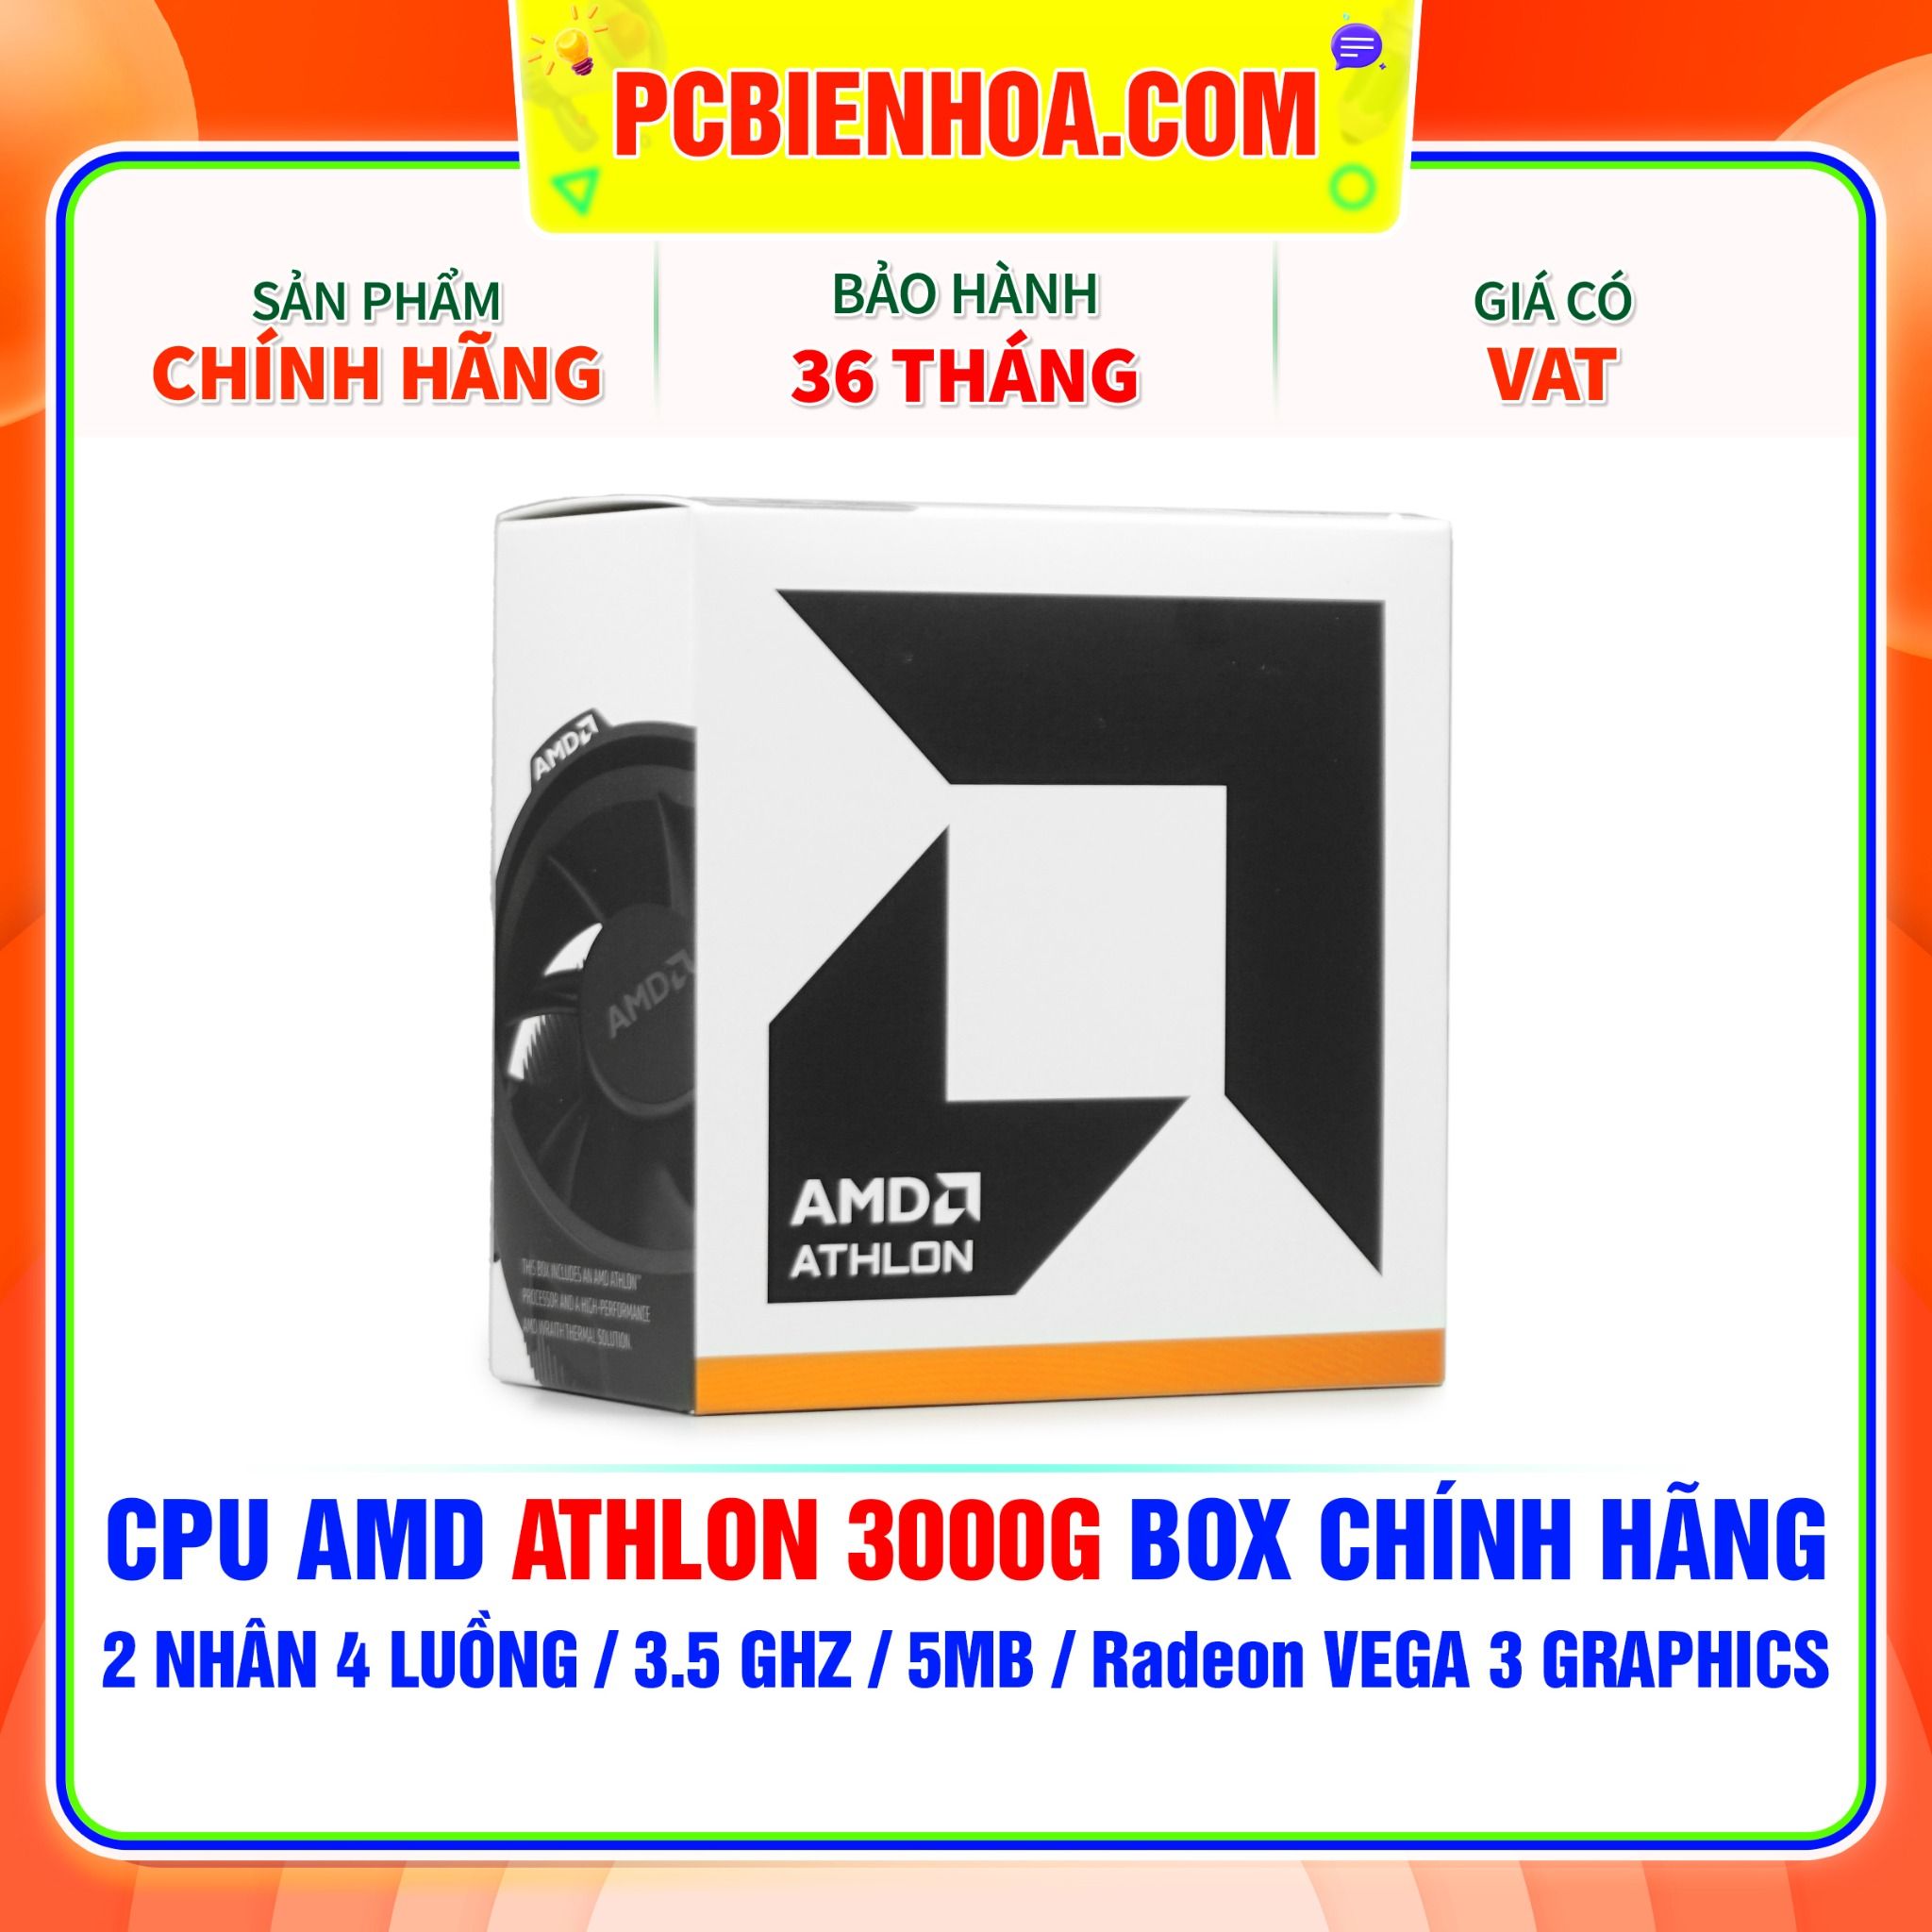  CPU AMD ATHLON 3000G BOX CHÍNH HÃNG ( 2 NHÂN 4 LUỒNG / 3.5 GHz / 5MB / RADEON VEGA 3 GRAPHICS ) 